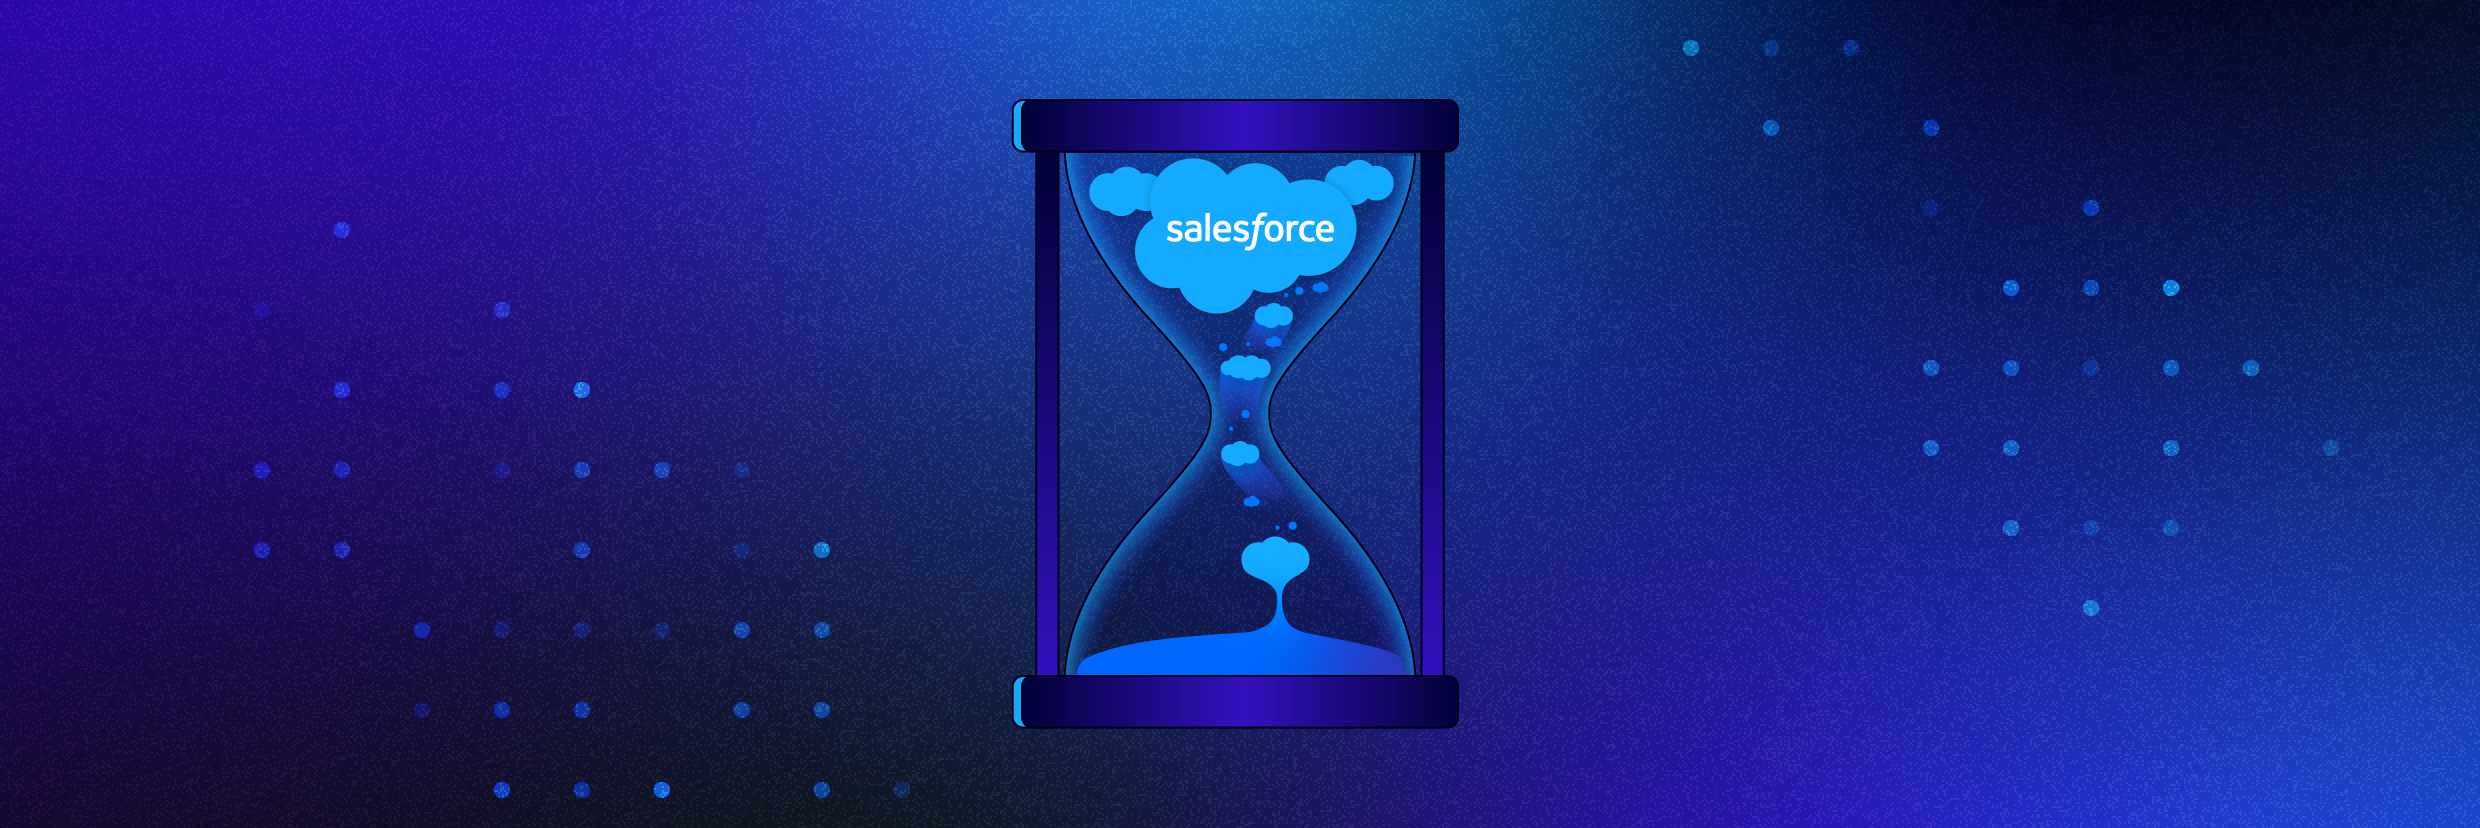 Salesforce: Saiba como a Varonis economiza horas do dia dos administradores